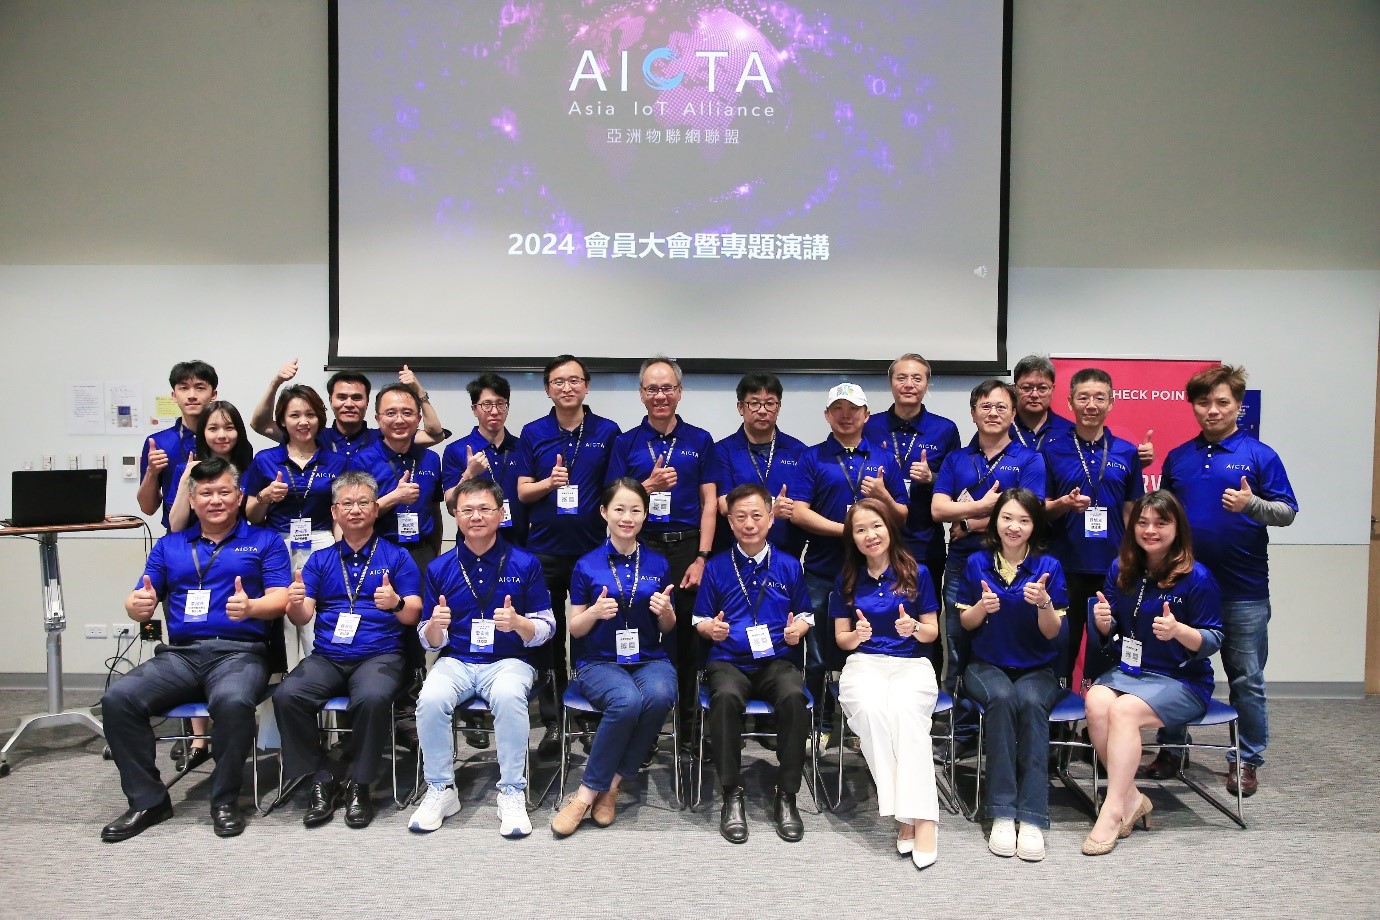 亞洲物聯網聯盟2024年會員大會暨專題演講 圓滿成功